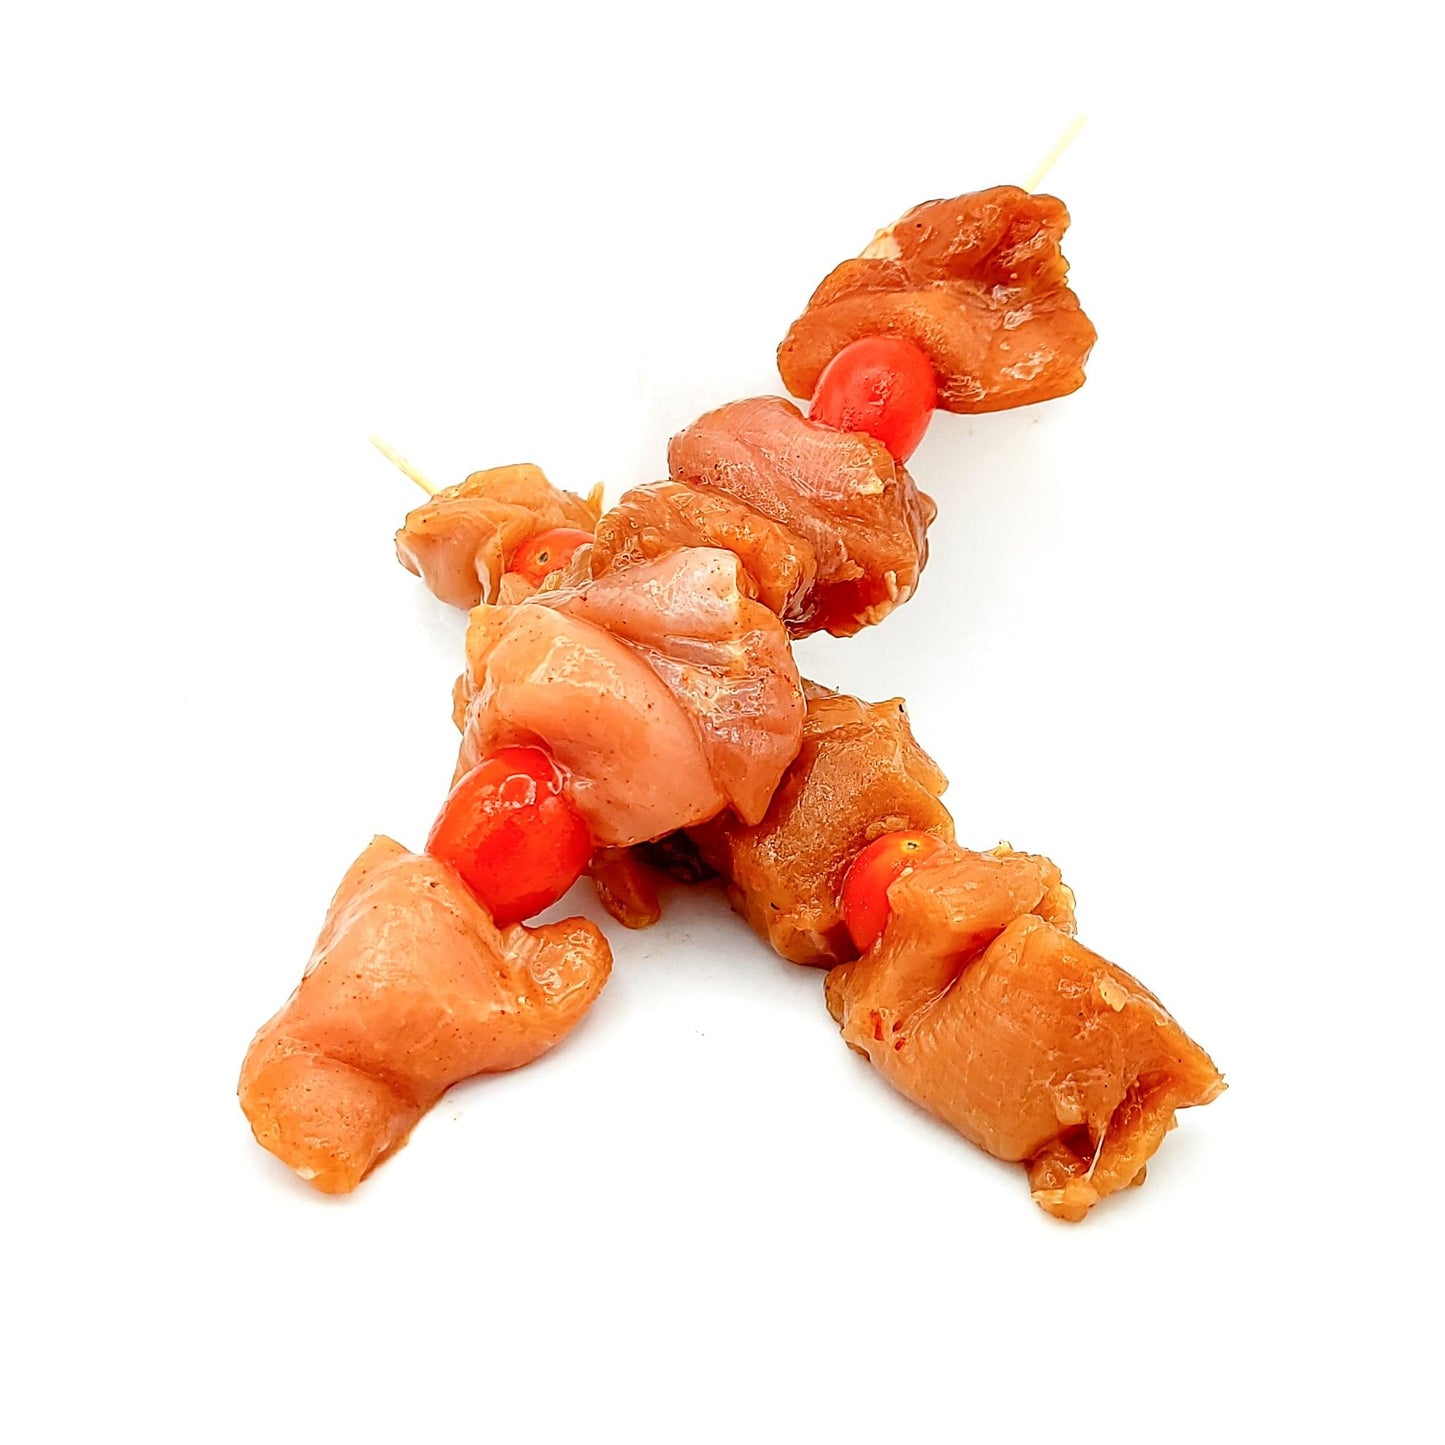 2 x Chicken Satay Skewers - Valbella Gourmet Foods